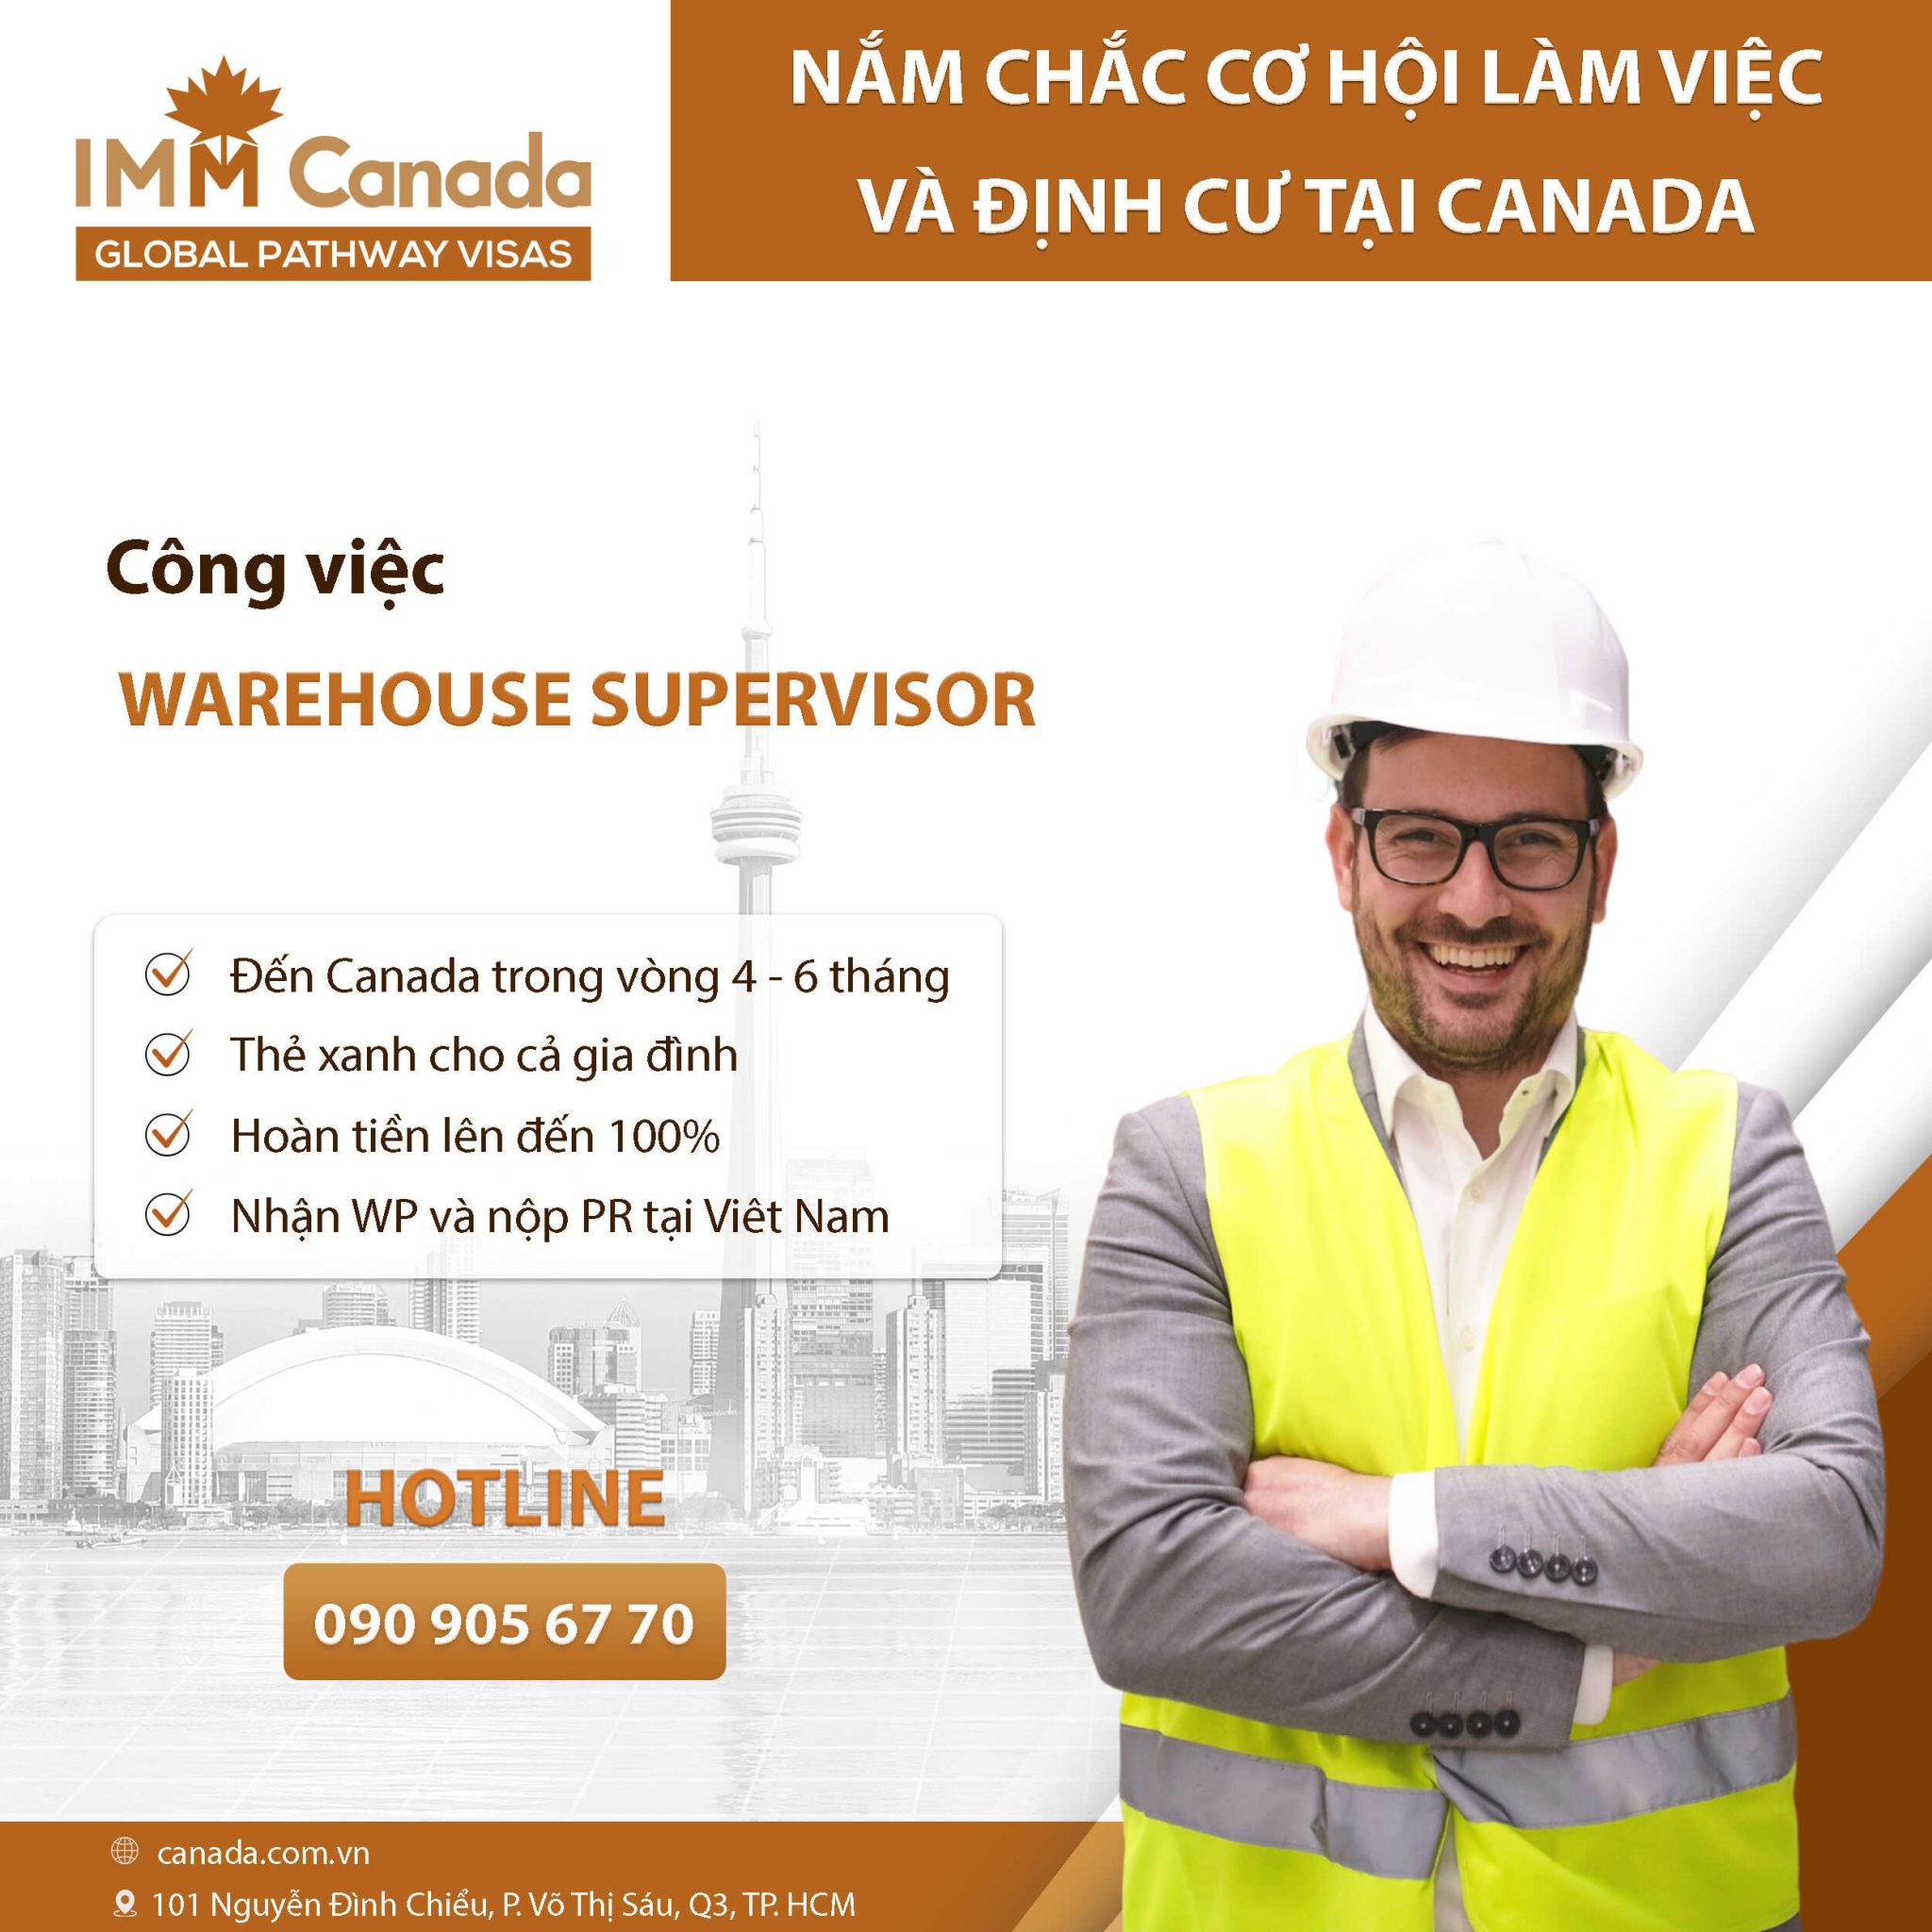 Ứng tuyển công việc văn phòng Canada có sẵn - Warehouse Supervisor